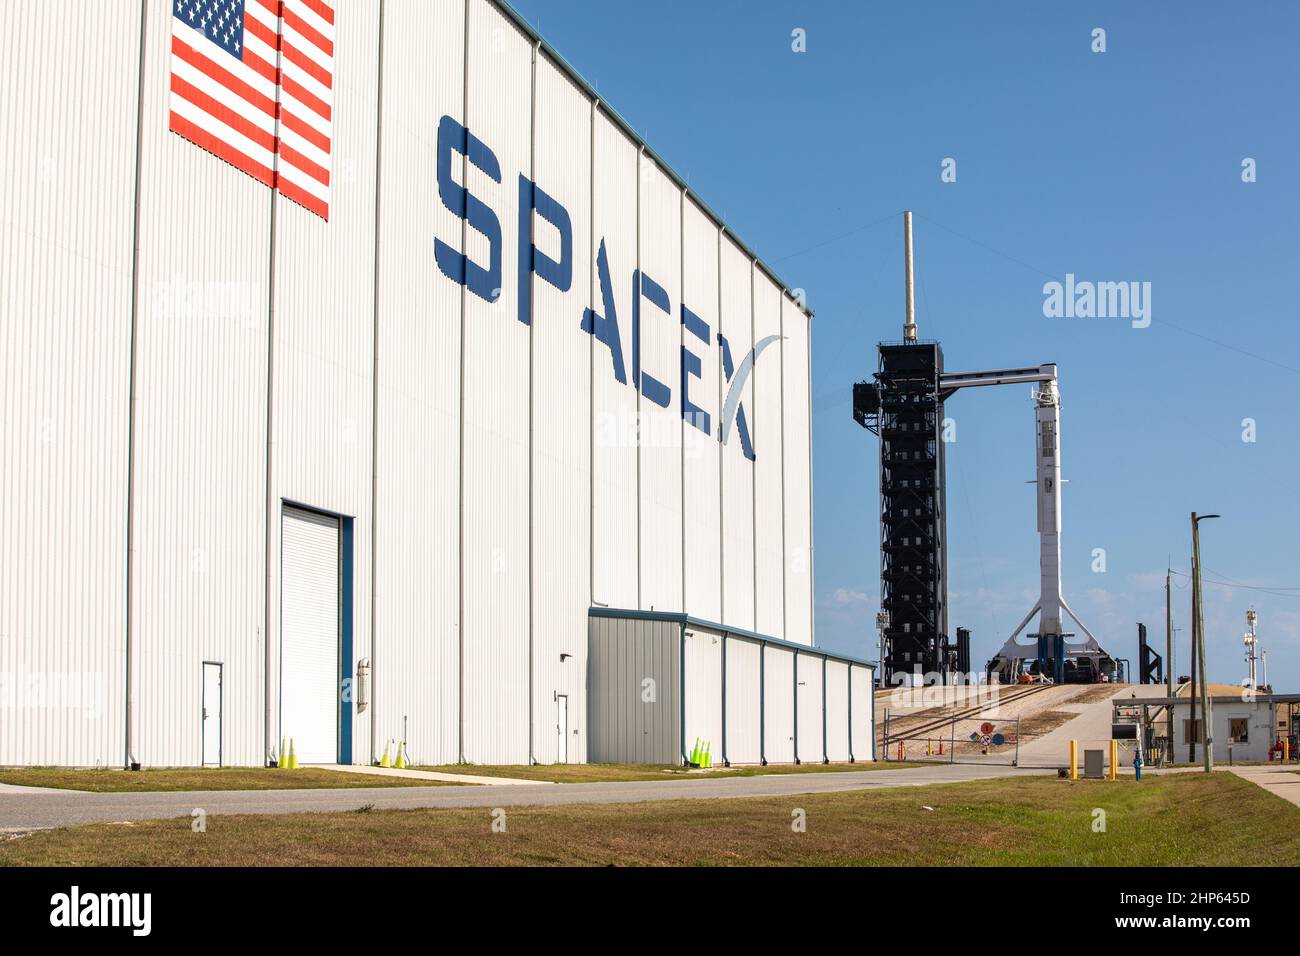 Une fusée SpaceX Falcon 9, avec le Crew Dragon au sommet, est prête à être lancée dans le complexe de lancement historique 39A du Kennedy Space Center de la NASA en Floride le 21 mai 2020, avant la mission SpaceX Demo-2 de la NASA. La fusée et le vaisseau spatial transporteront les astronautes de la NASA Robert Behnken et Douglas Hurley à la Station spatiale internationale dans le cadre du programme des équipages commerciaux de l’agence, ce qui ramenera les capacités de vol spatial humain aux États-Unis après près d’une décennie. Ce sera le dernier essai en vol de SpaceX, ouvrant la voie à la NASA pour certifier le système de transport de l'équipage pour des vols réguliers et à bord d'un équipage à destination de l'orbiti Banque D'Images